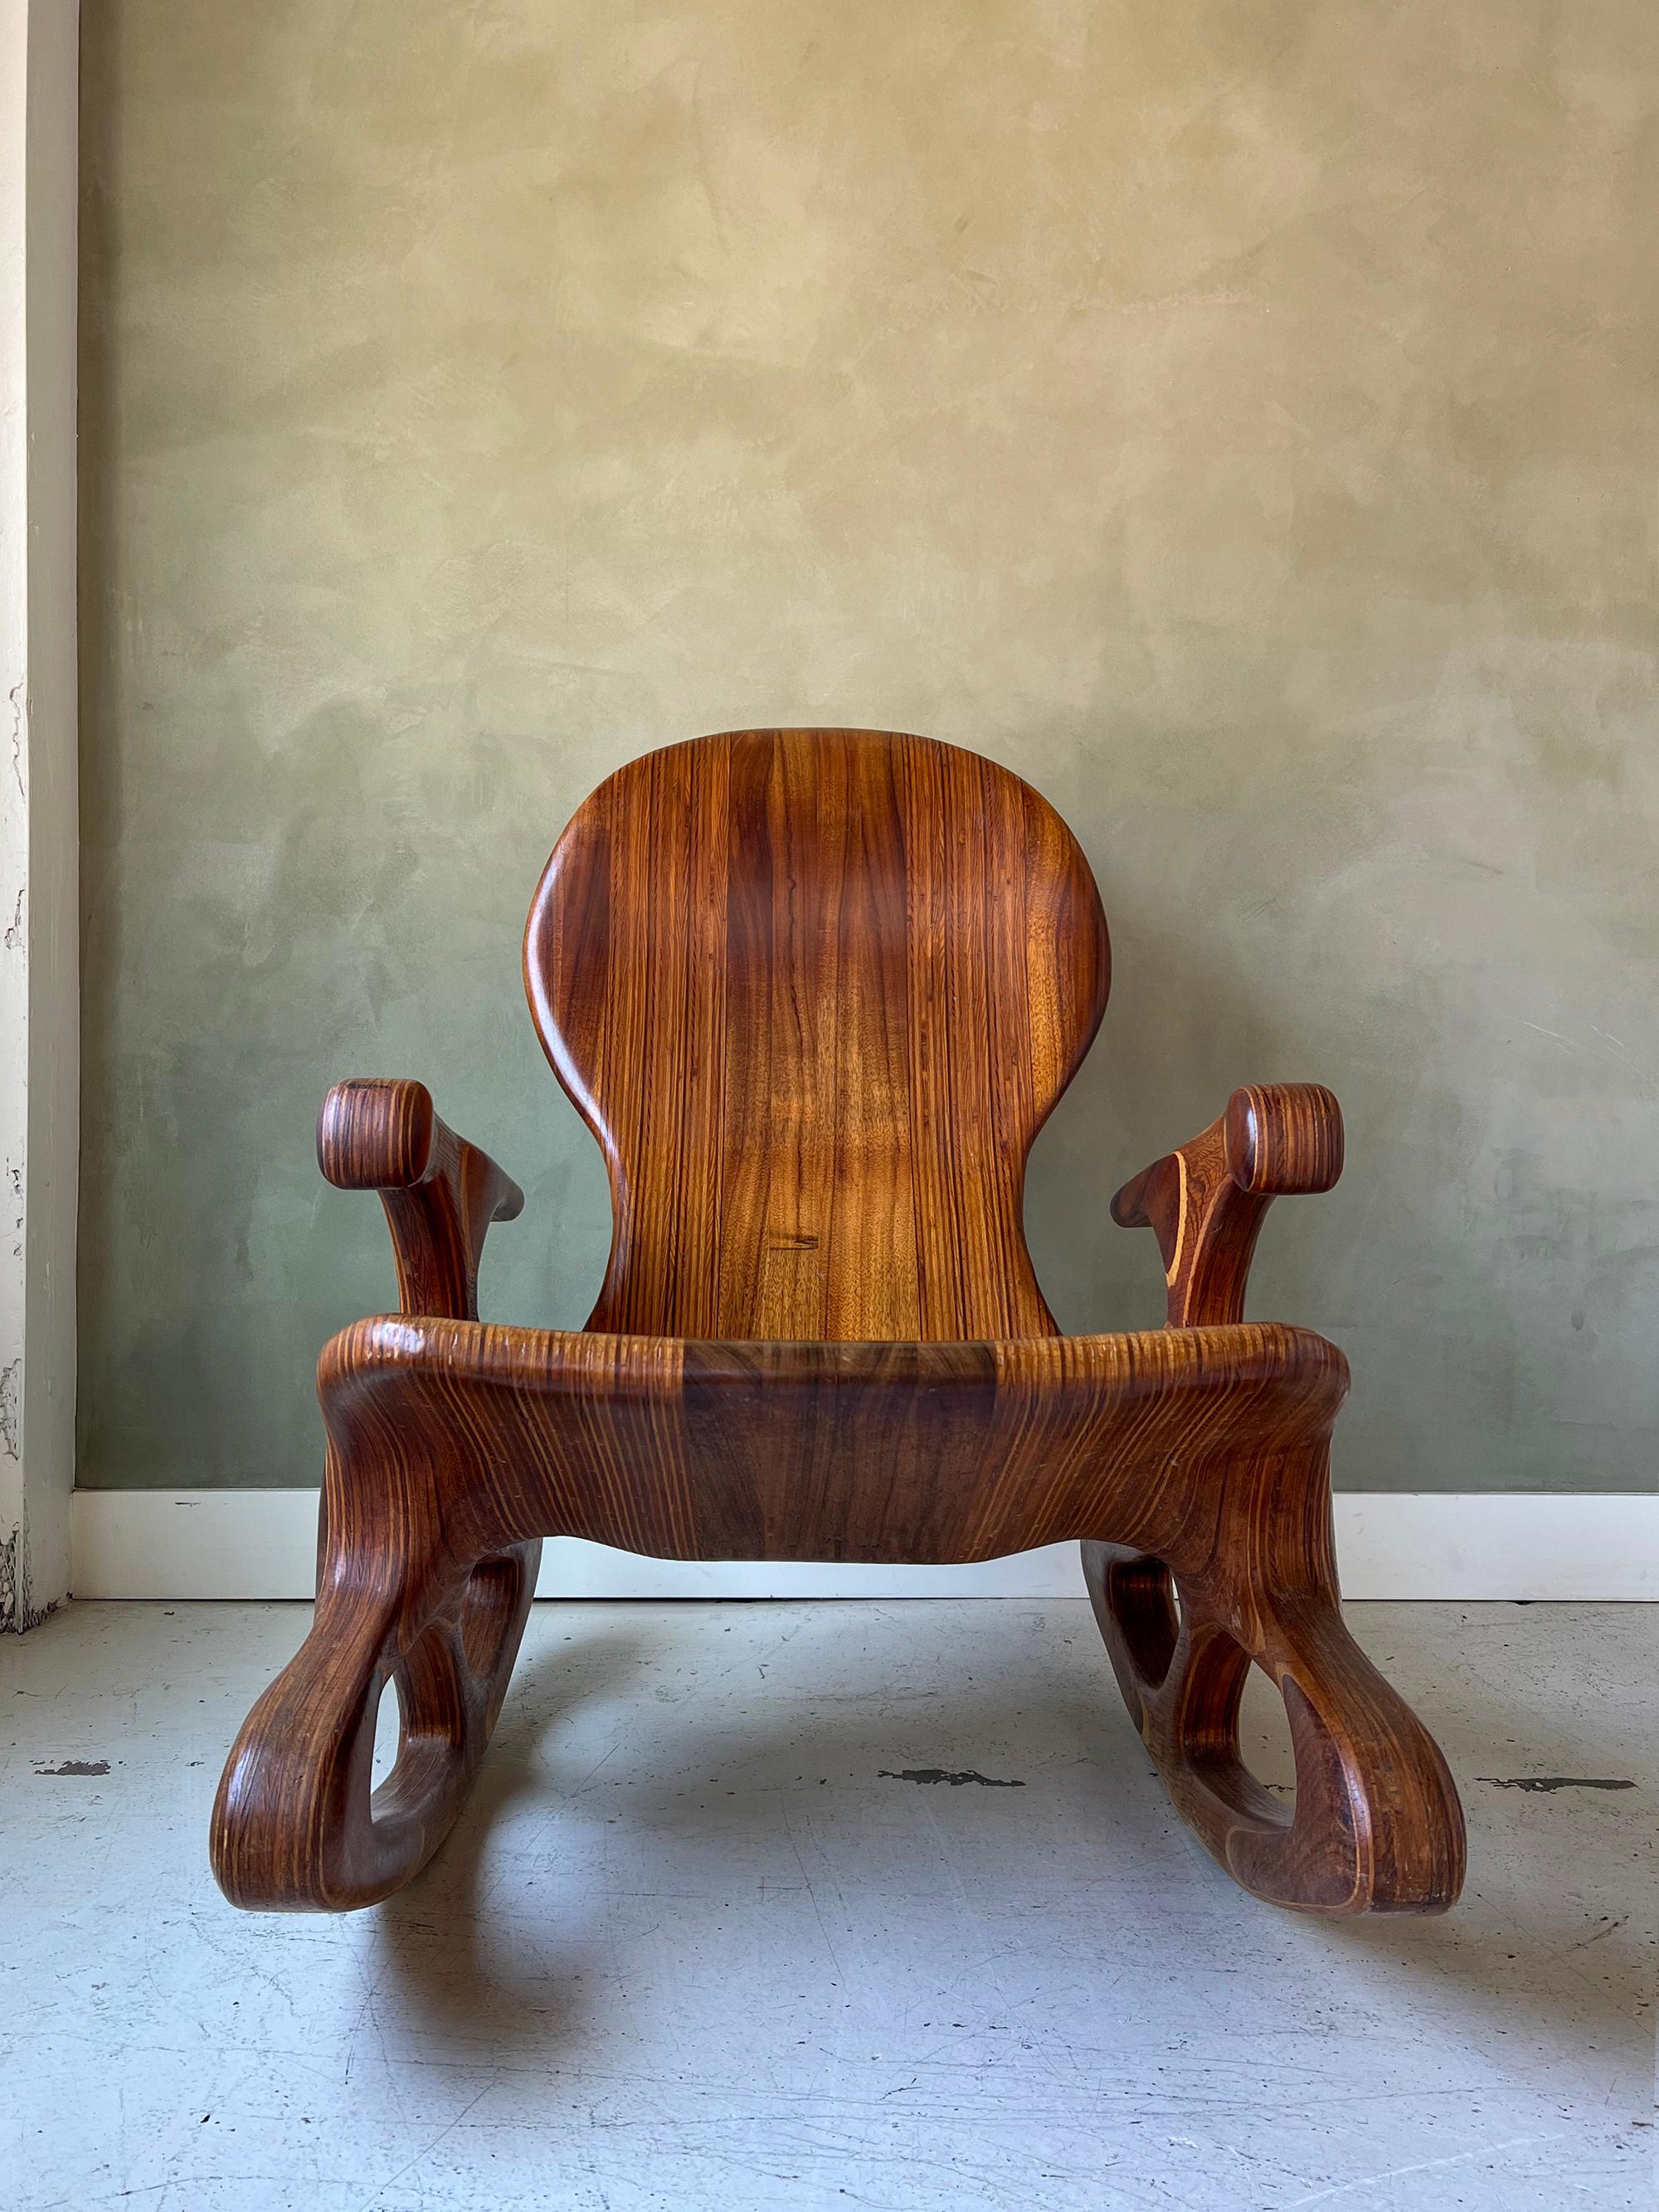 Carved Vintage Solid Walnut Sculpted Modernist Rocking Chair